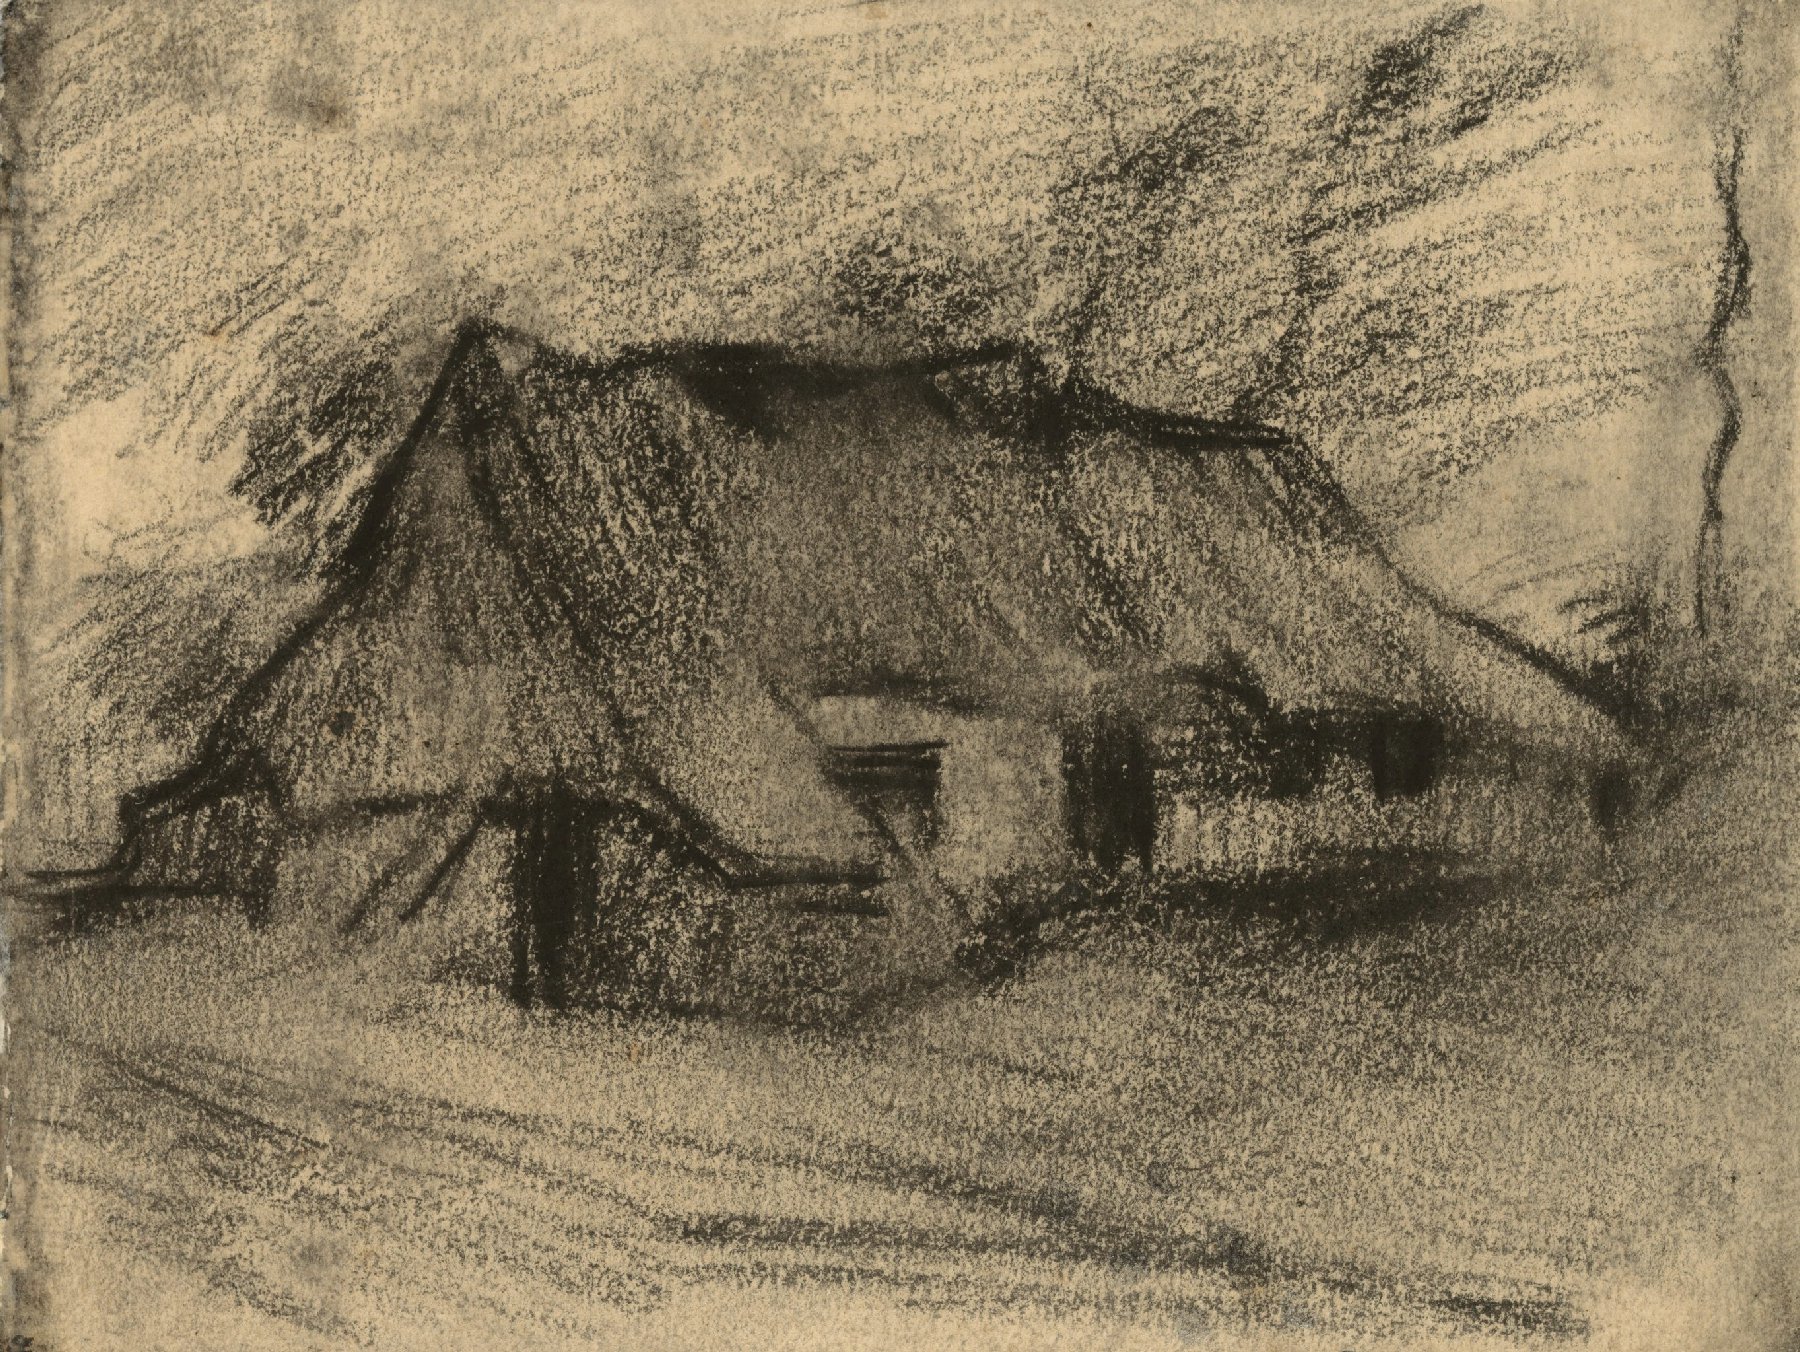 Hut Vincent van Gogh (1853 - 1890), Nuenen, juni-augustus 1885